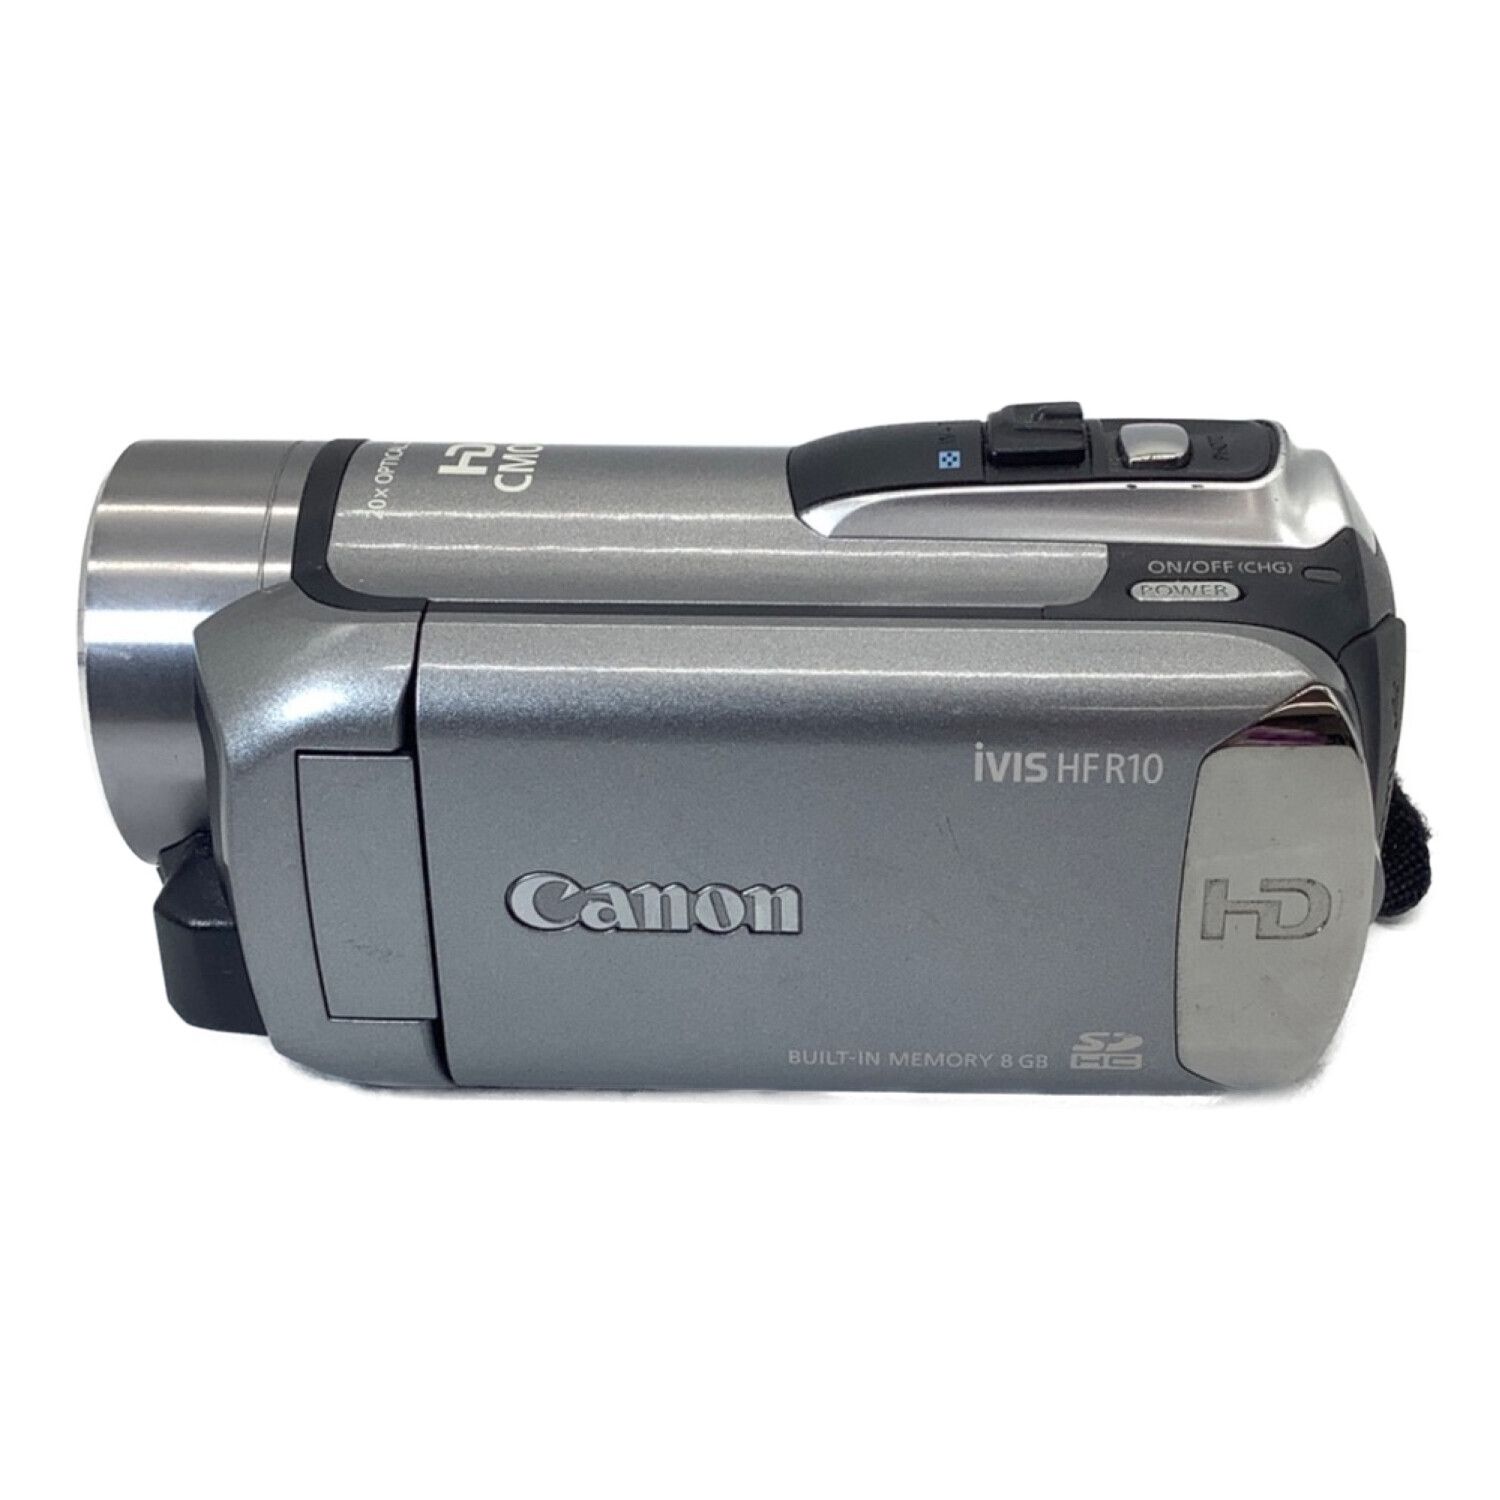 キャノン IVIS HF R10 ビデオカメラ - ビデオカメラ